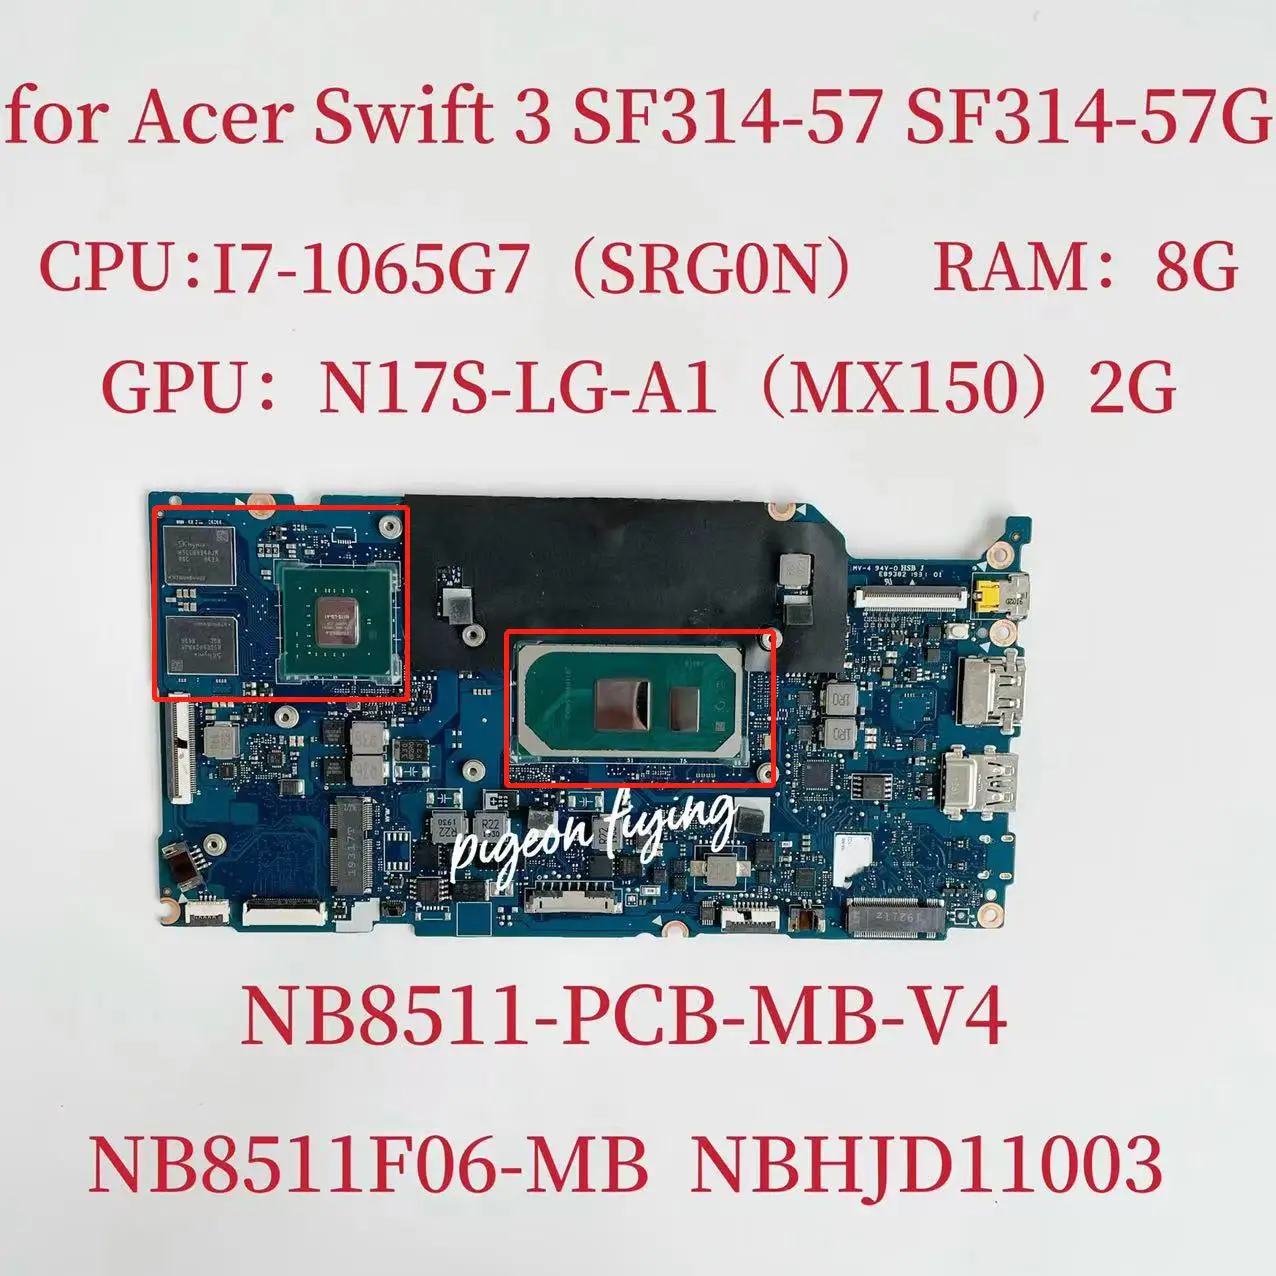 Acer Hızlı SF314-57 SF314-57G Anakart NB8511-PCB-MB-V4 Anakart NB8511-PCB-MB-V4 SRG0N ı7-1065G7 NBHR111004